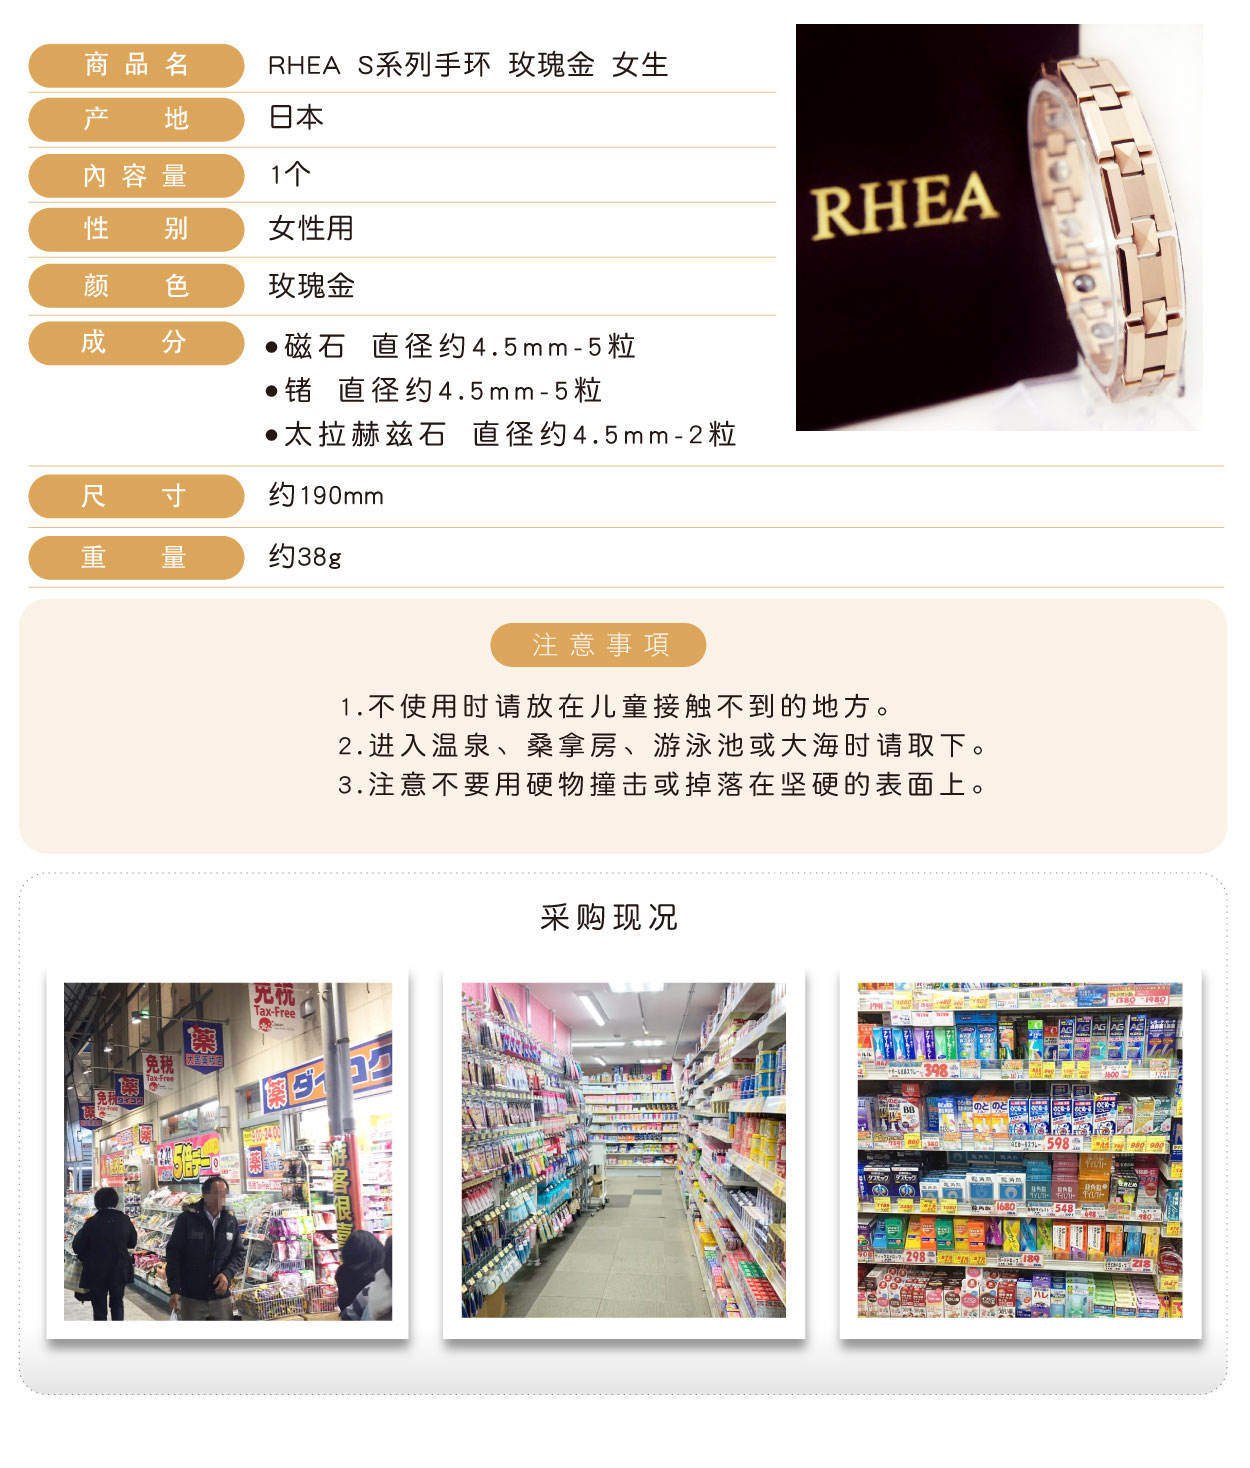 RHEA-S系列手環-玫瑰金-女生-簡